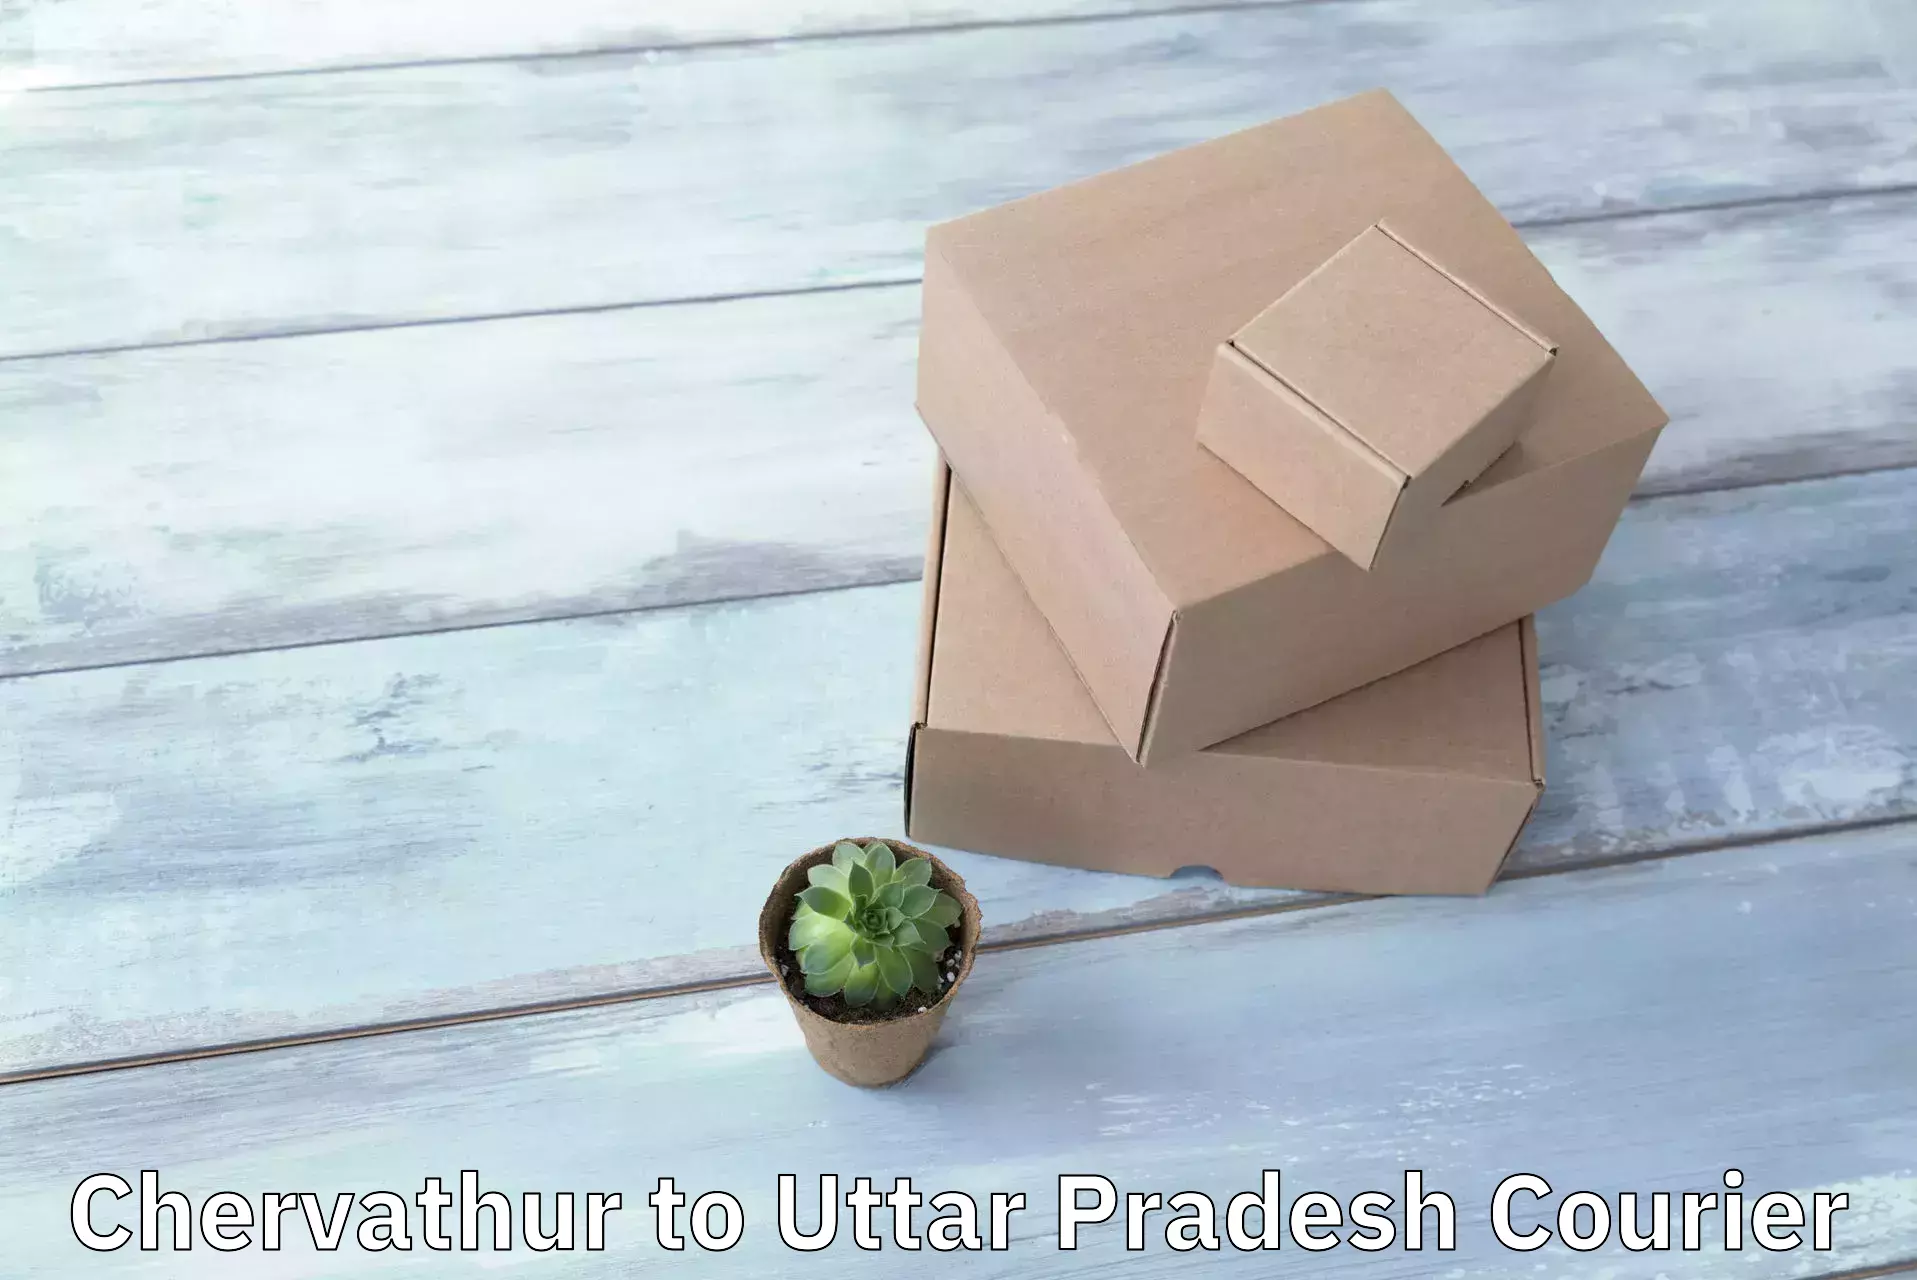 Efficient parcel service in Chervathur to Uttar Pradesh